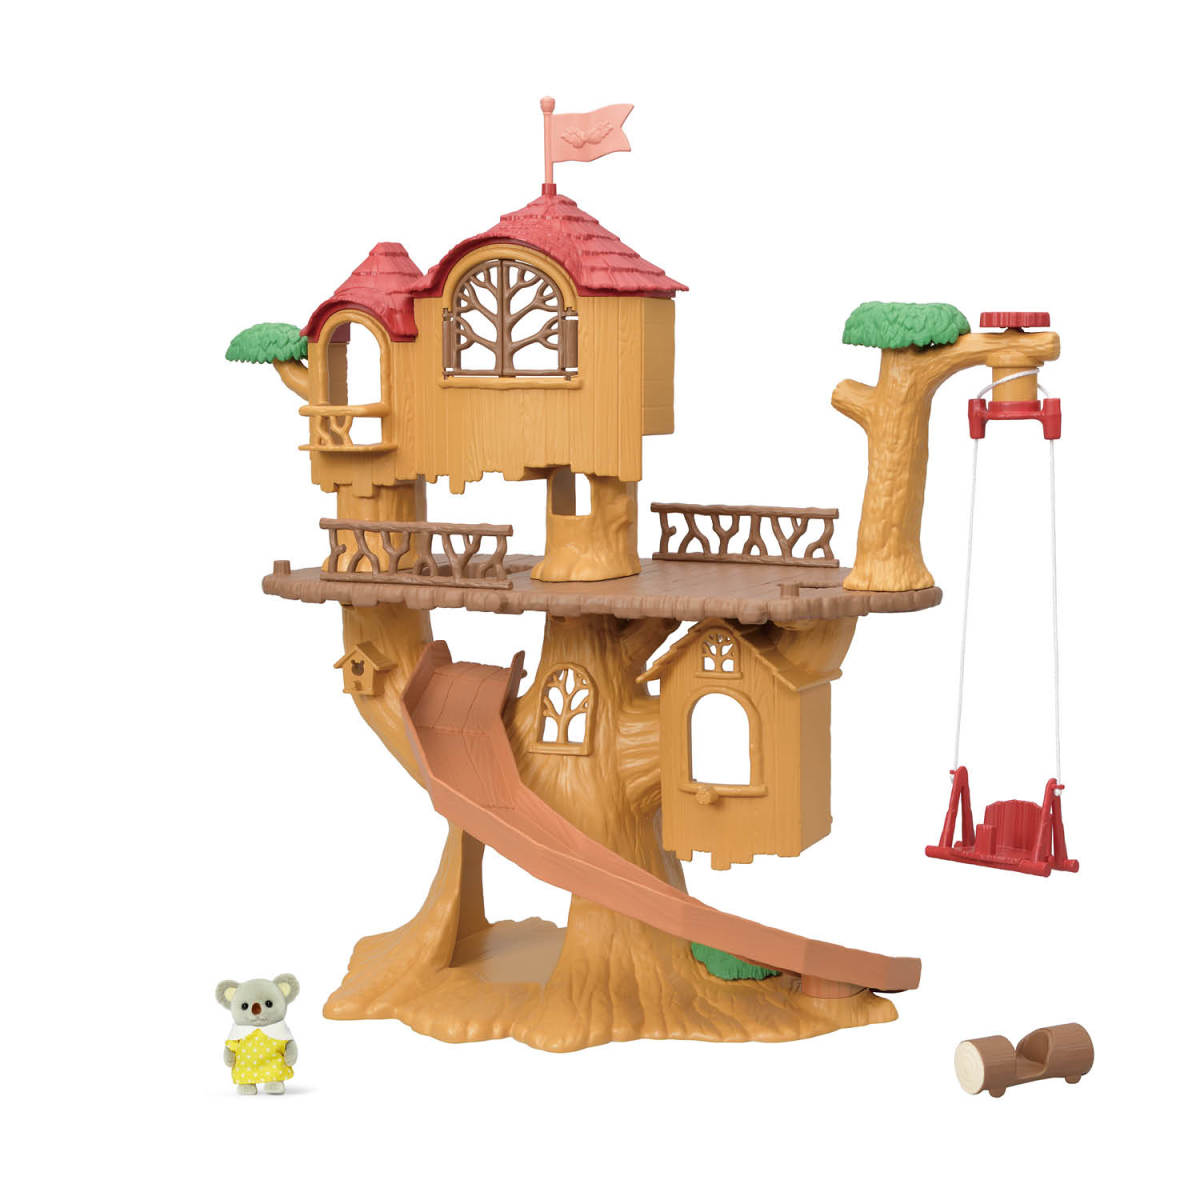 Adventure Tree House Gift Set, , large image 0